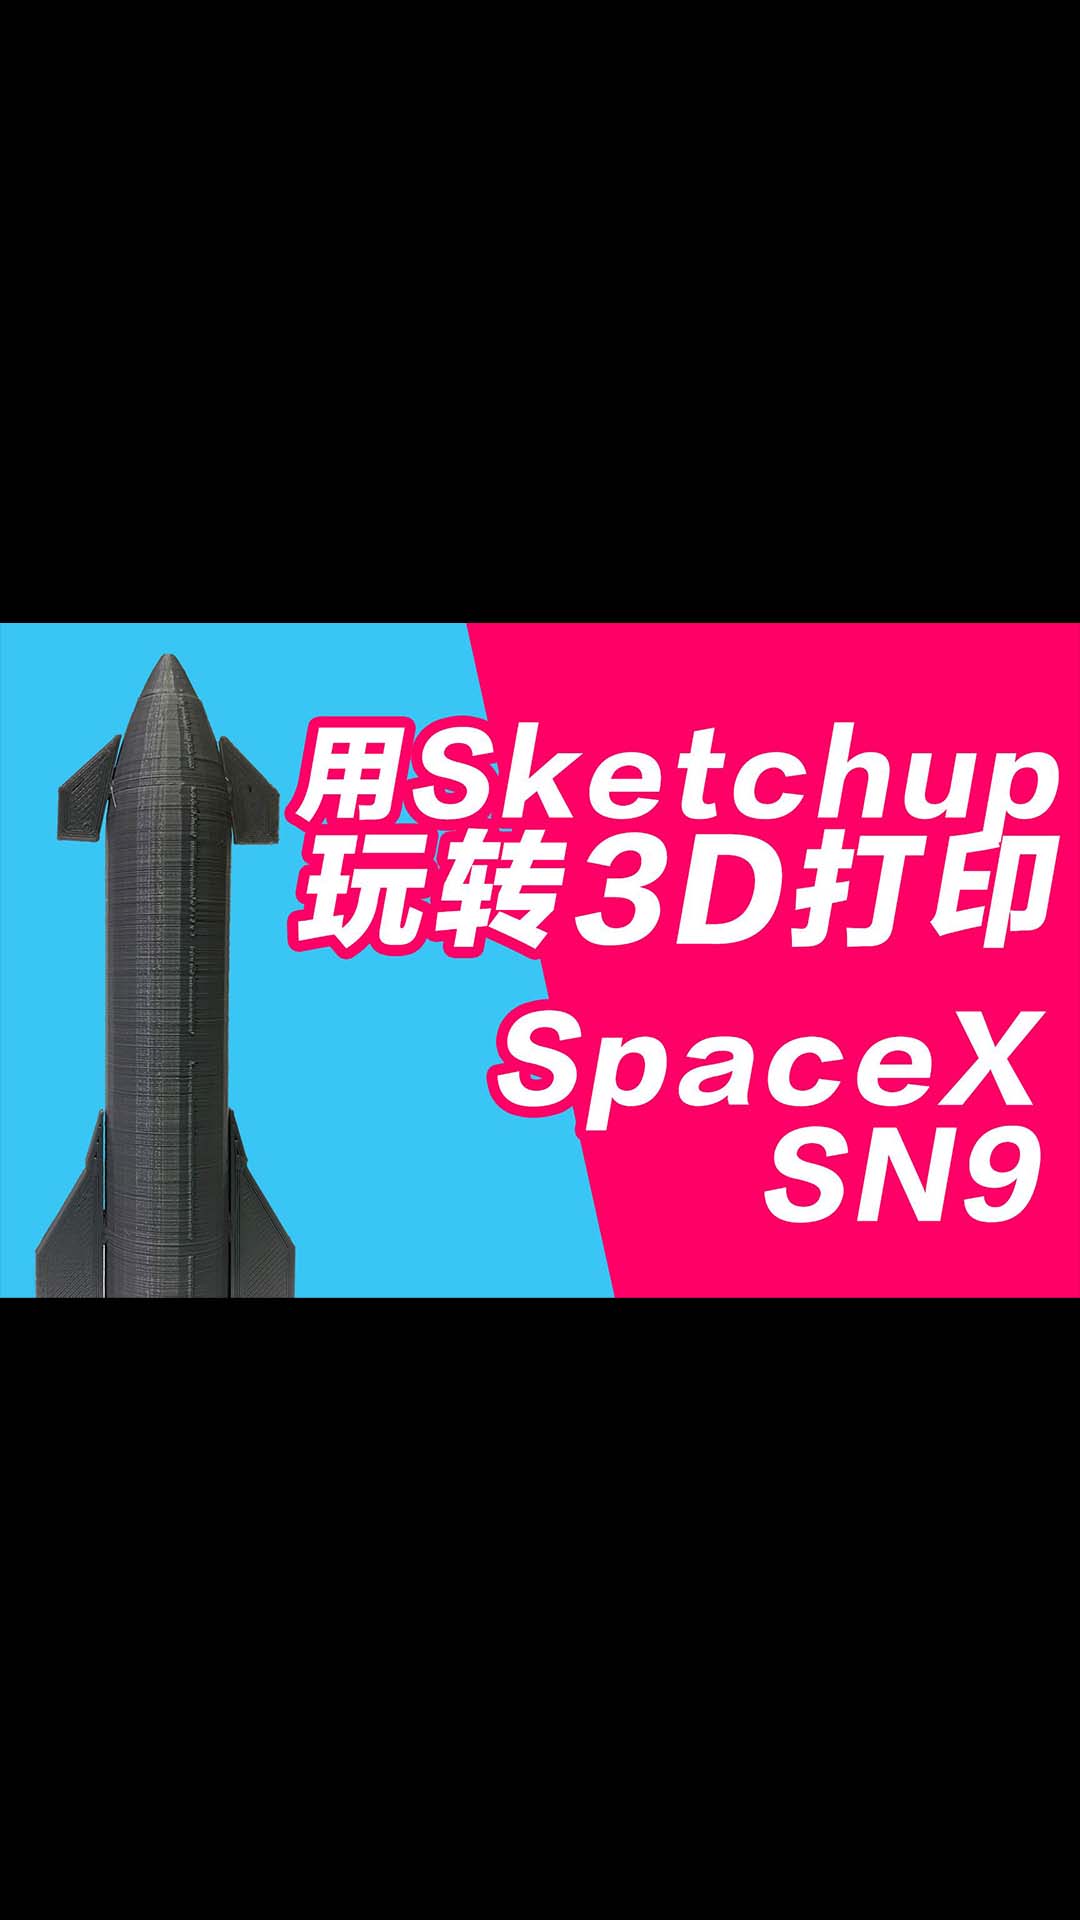 玩转3D打印机系列 用sketchup做个SpaceX sn9火箭